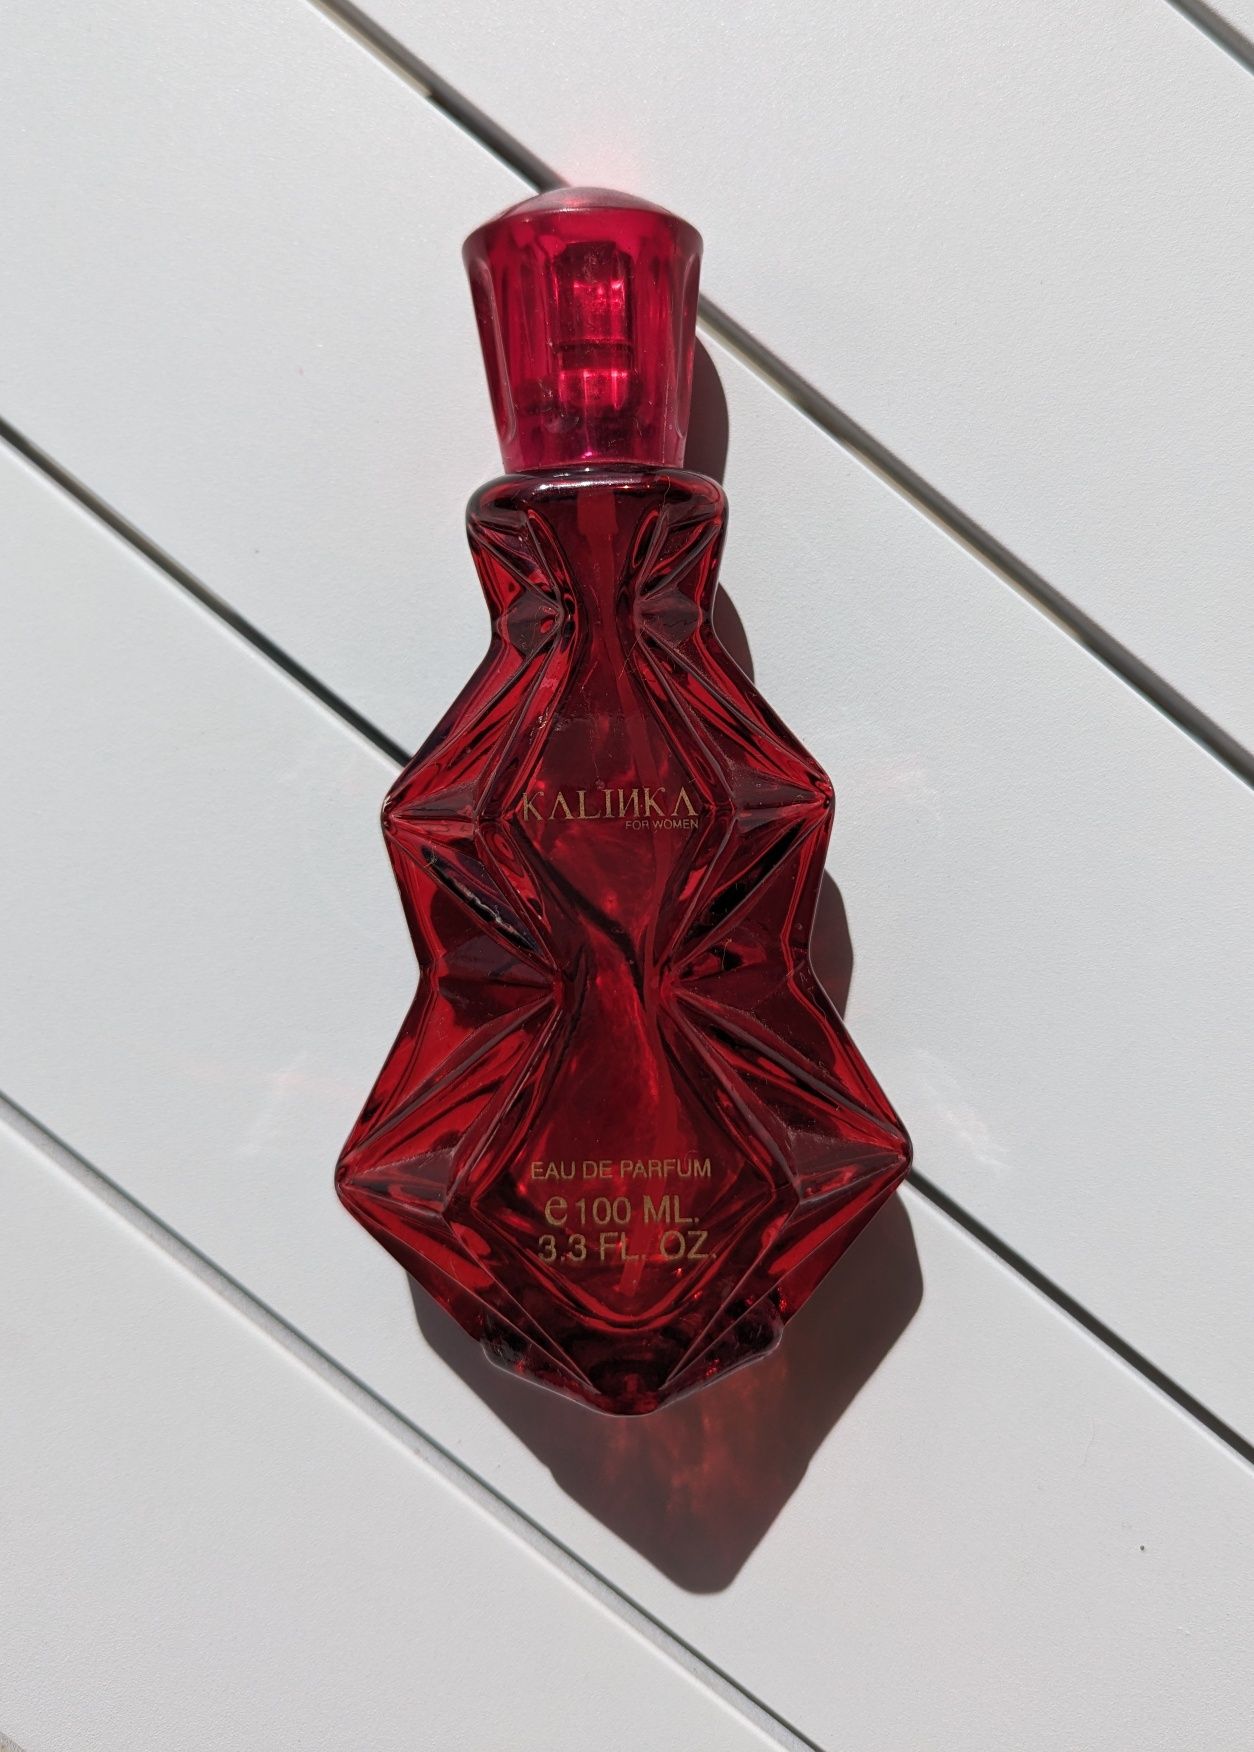 Kalinka vintage perfume